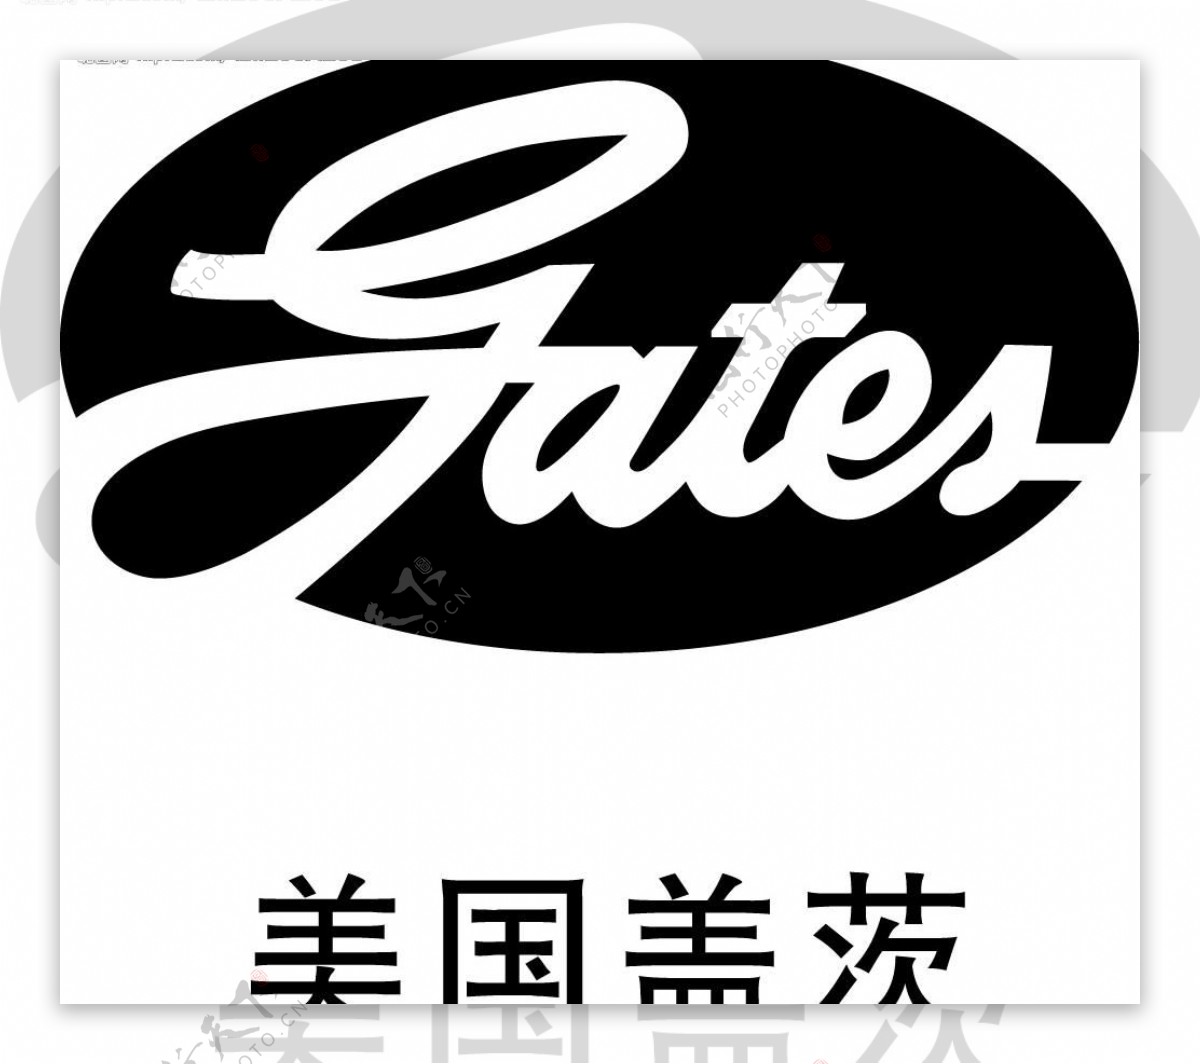 美国盖茨logo图片